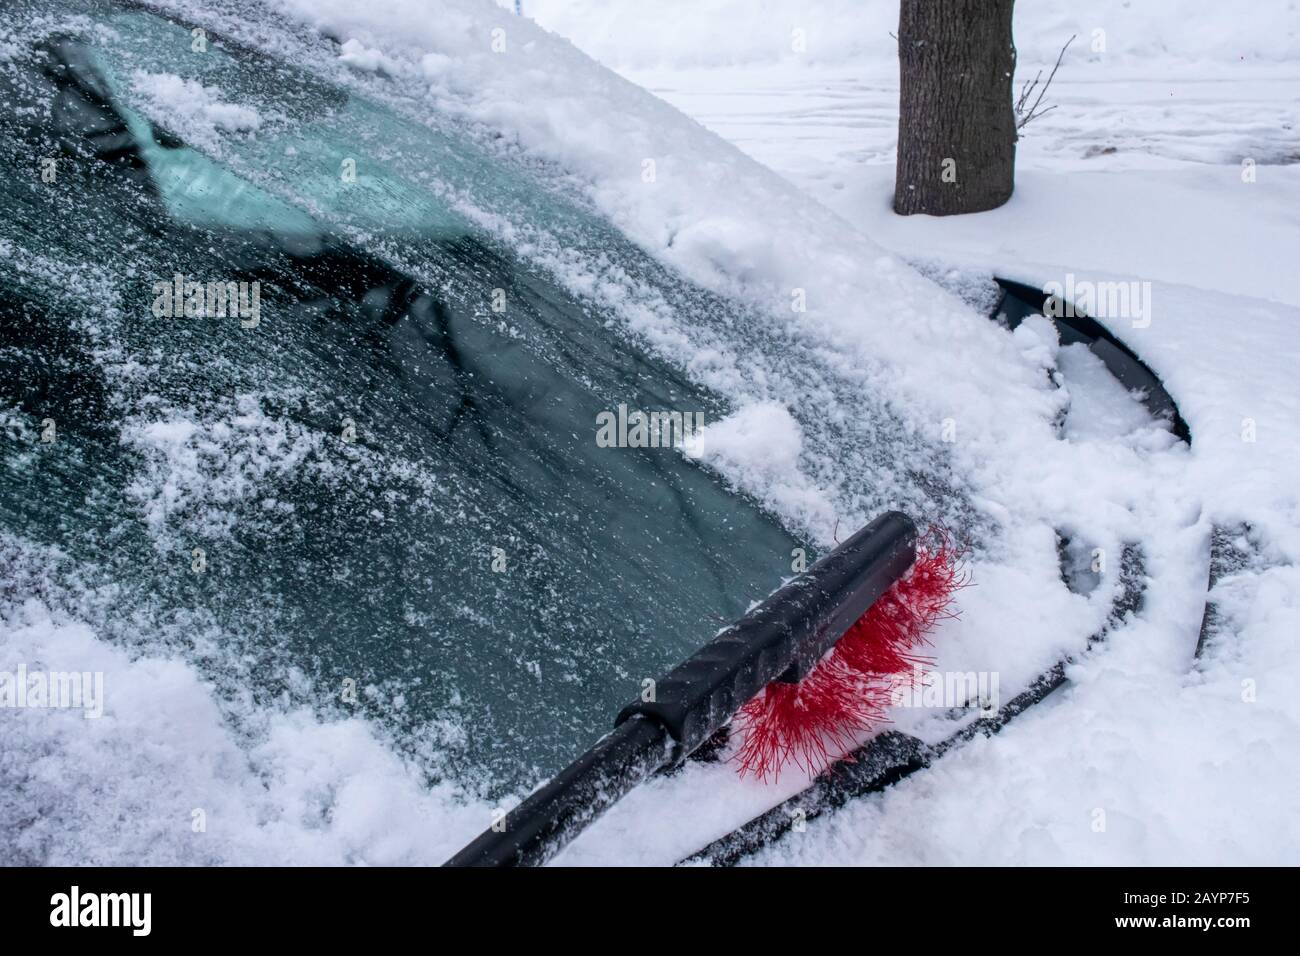 Una spazzolina per la neve scivola lungo il parabrezza di un'auto, rimuovendo la neve fresca e bagnata che si è accumulata durante una recente nevicata. Foto Stock